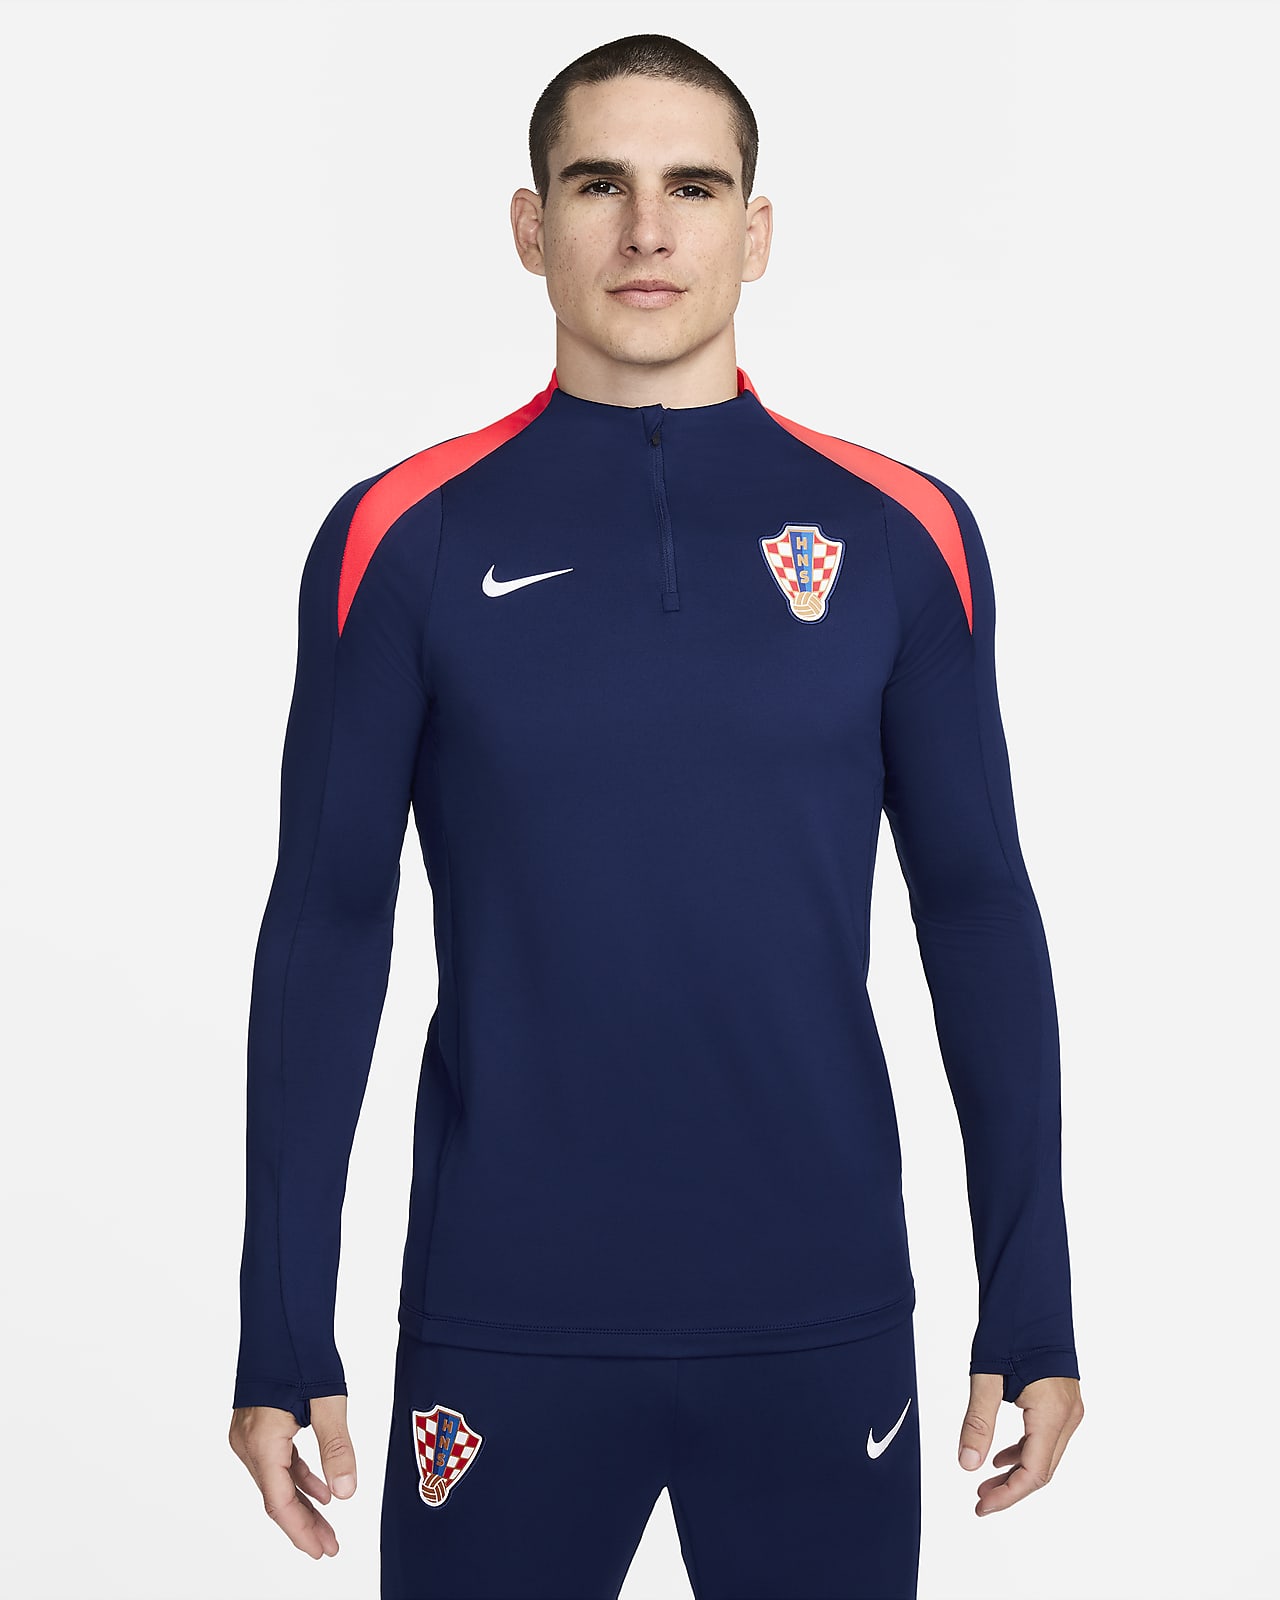 Ανδρική ποδοσφαιρική μπλούζα προπόνησης Nike Dri-FIT Κροατία Strike